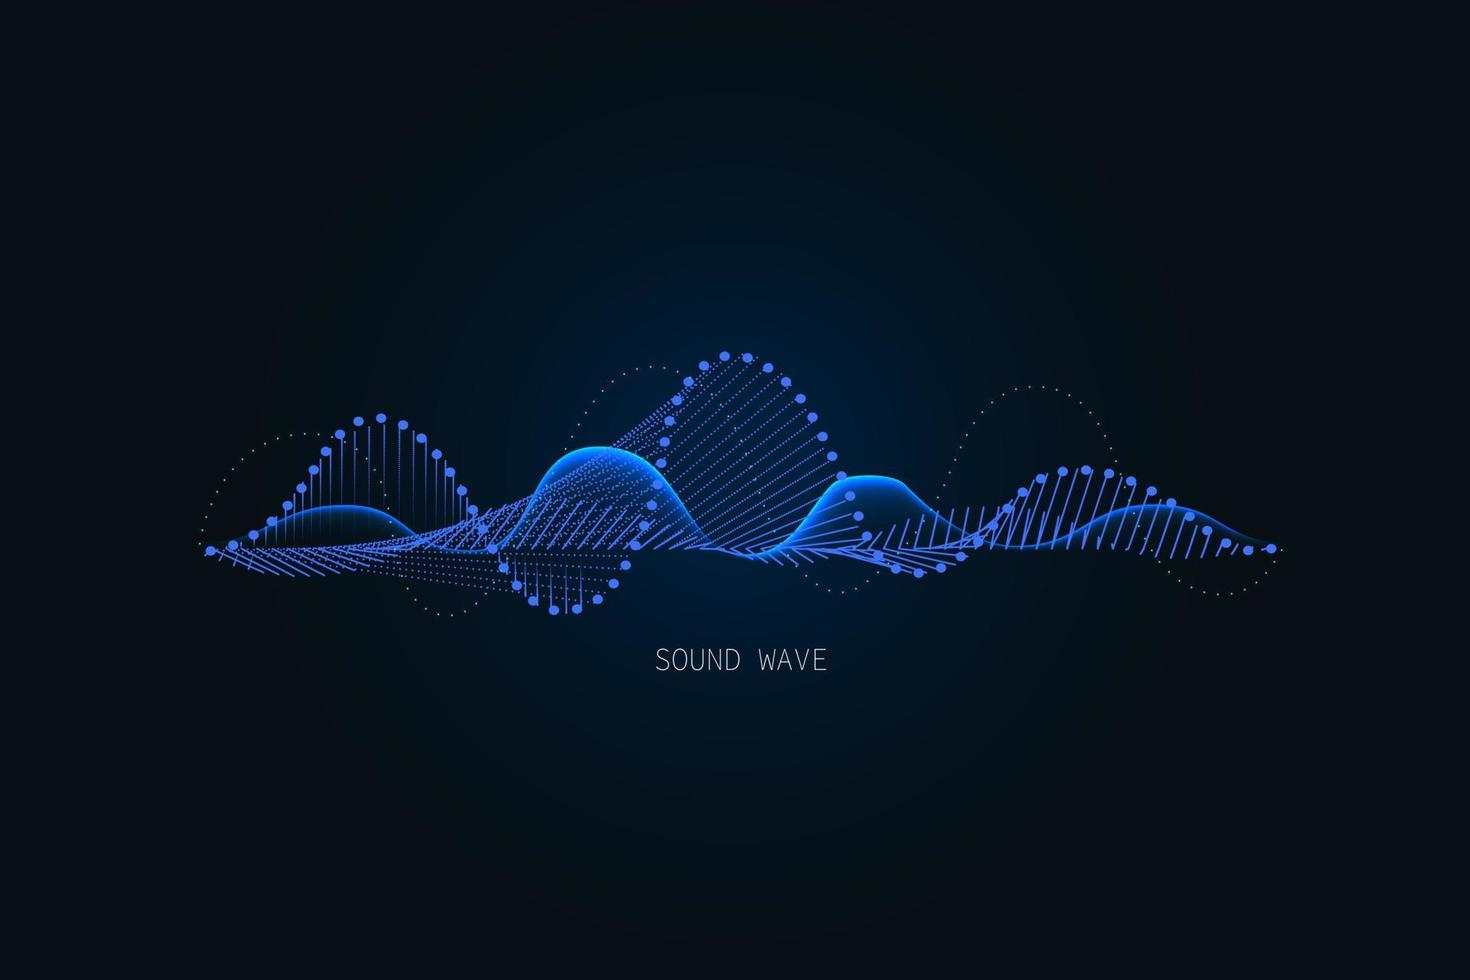 illustration d'onde sonore sur fond sombre. indicateurs d'égaliseur numérique bleu abstrait. vecteur